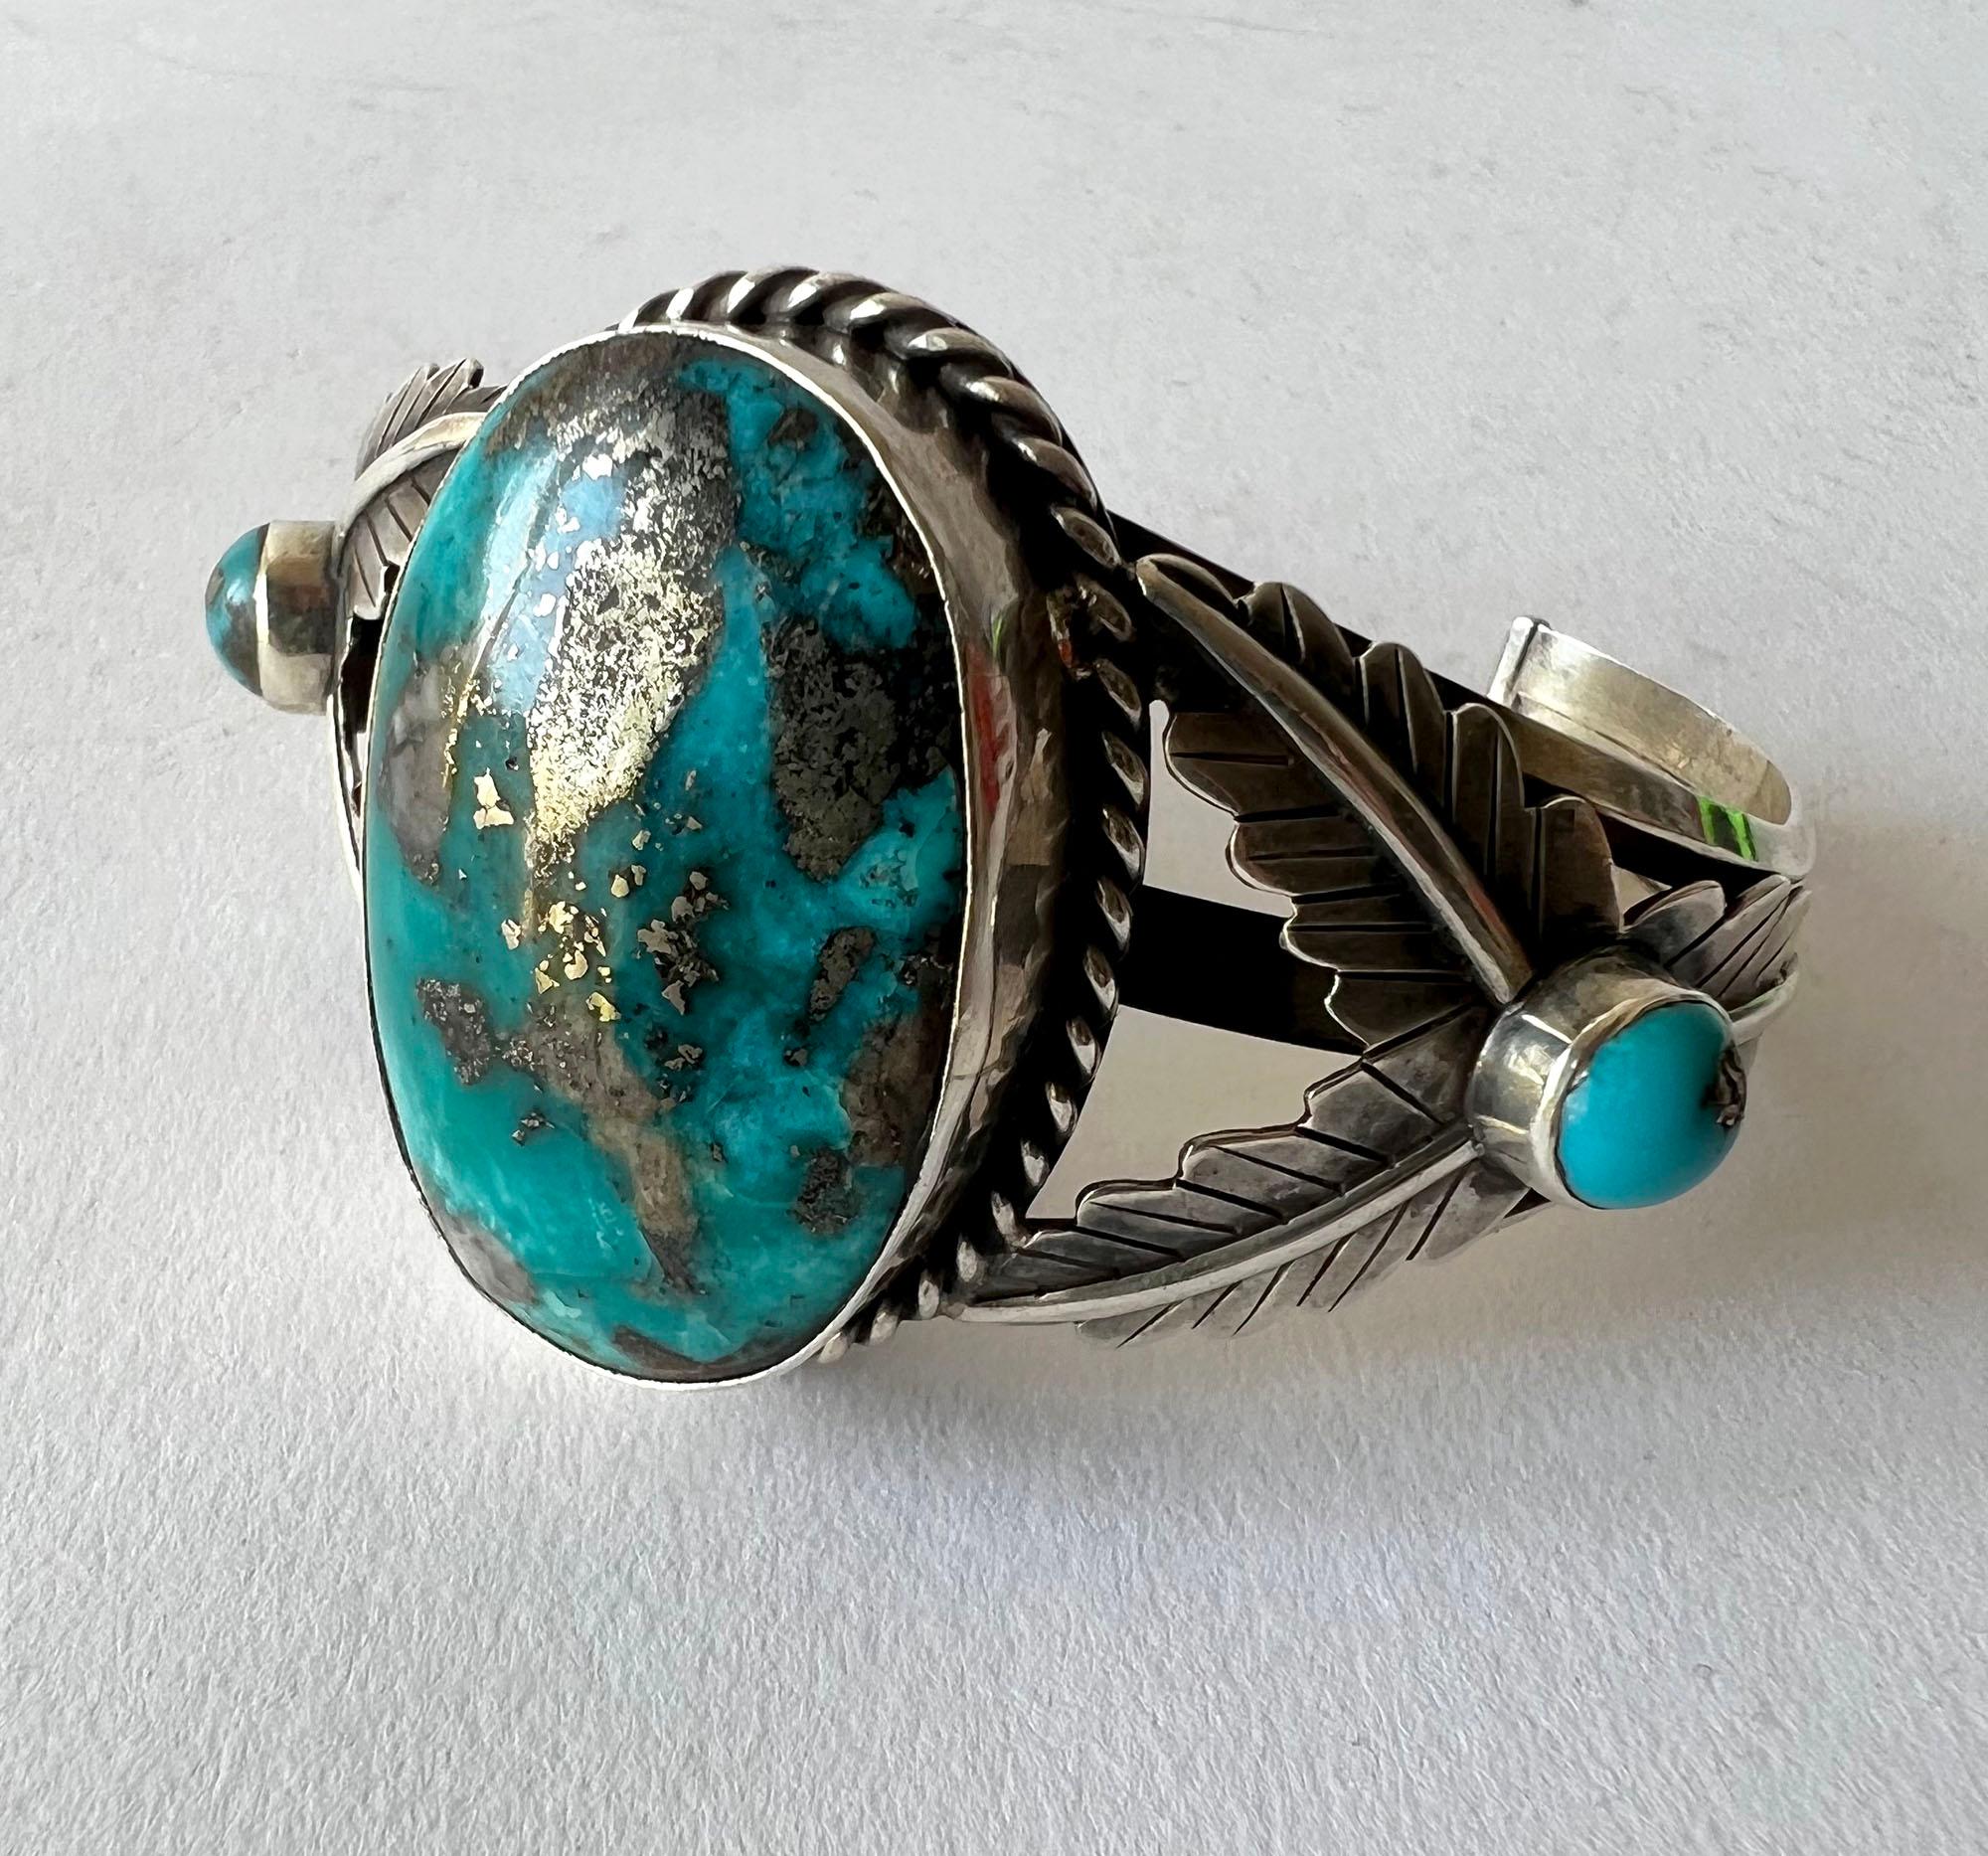 Bracelet amérindien en argent sterling avec une grande turquoise ovale, fabricant inconnu. Le bracelet mesure 5,5